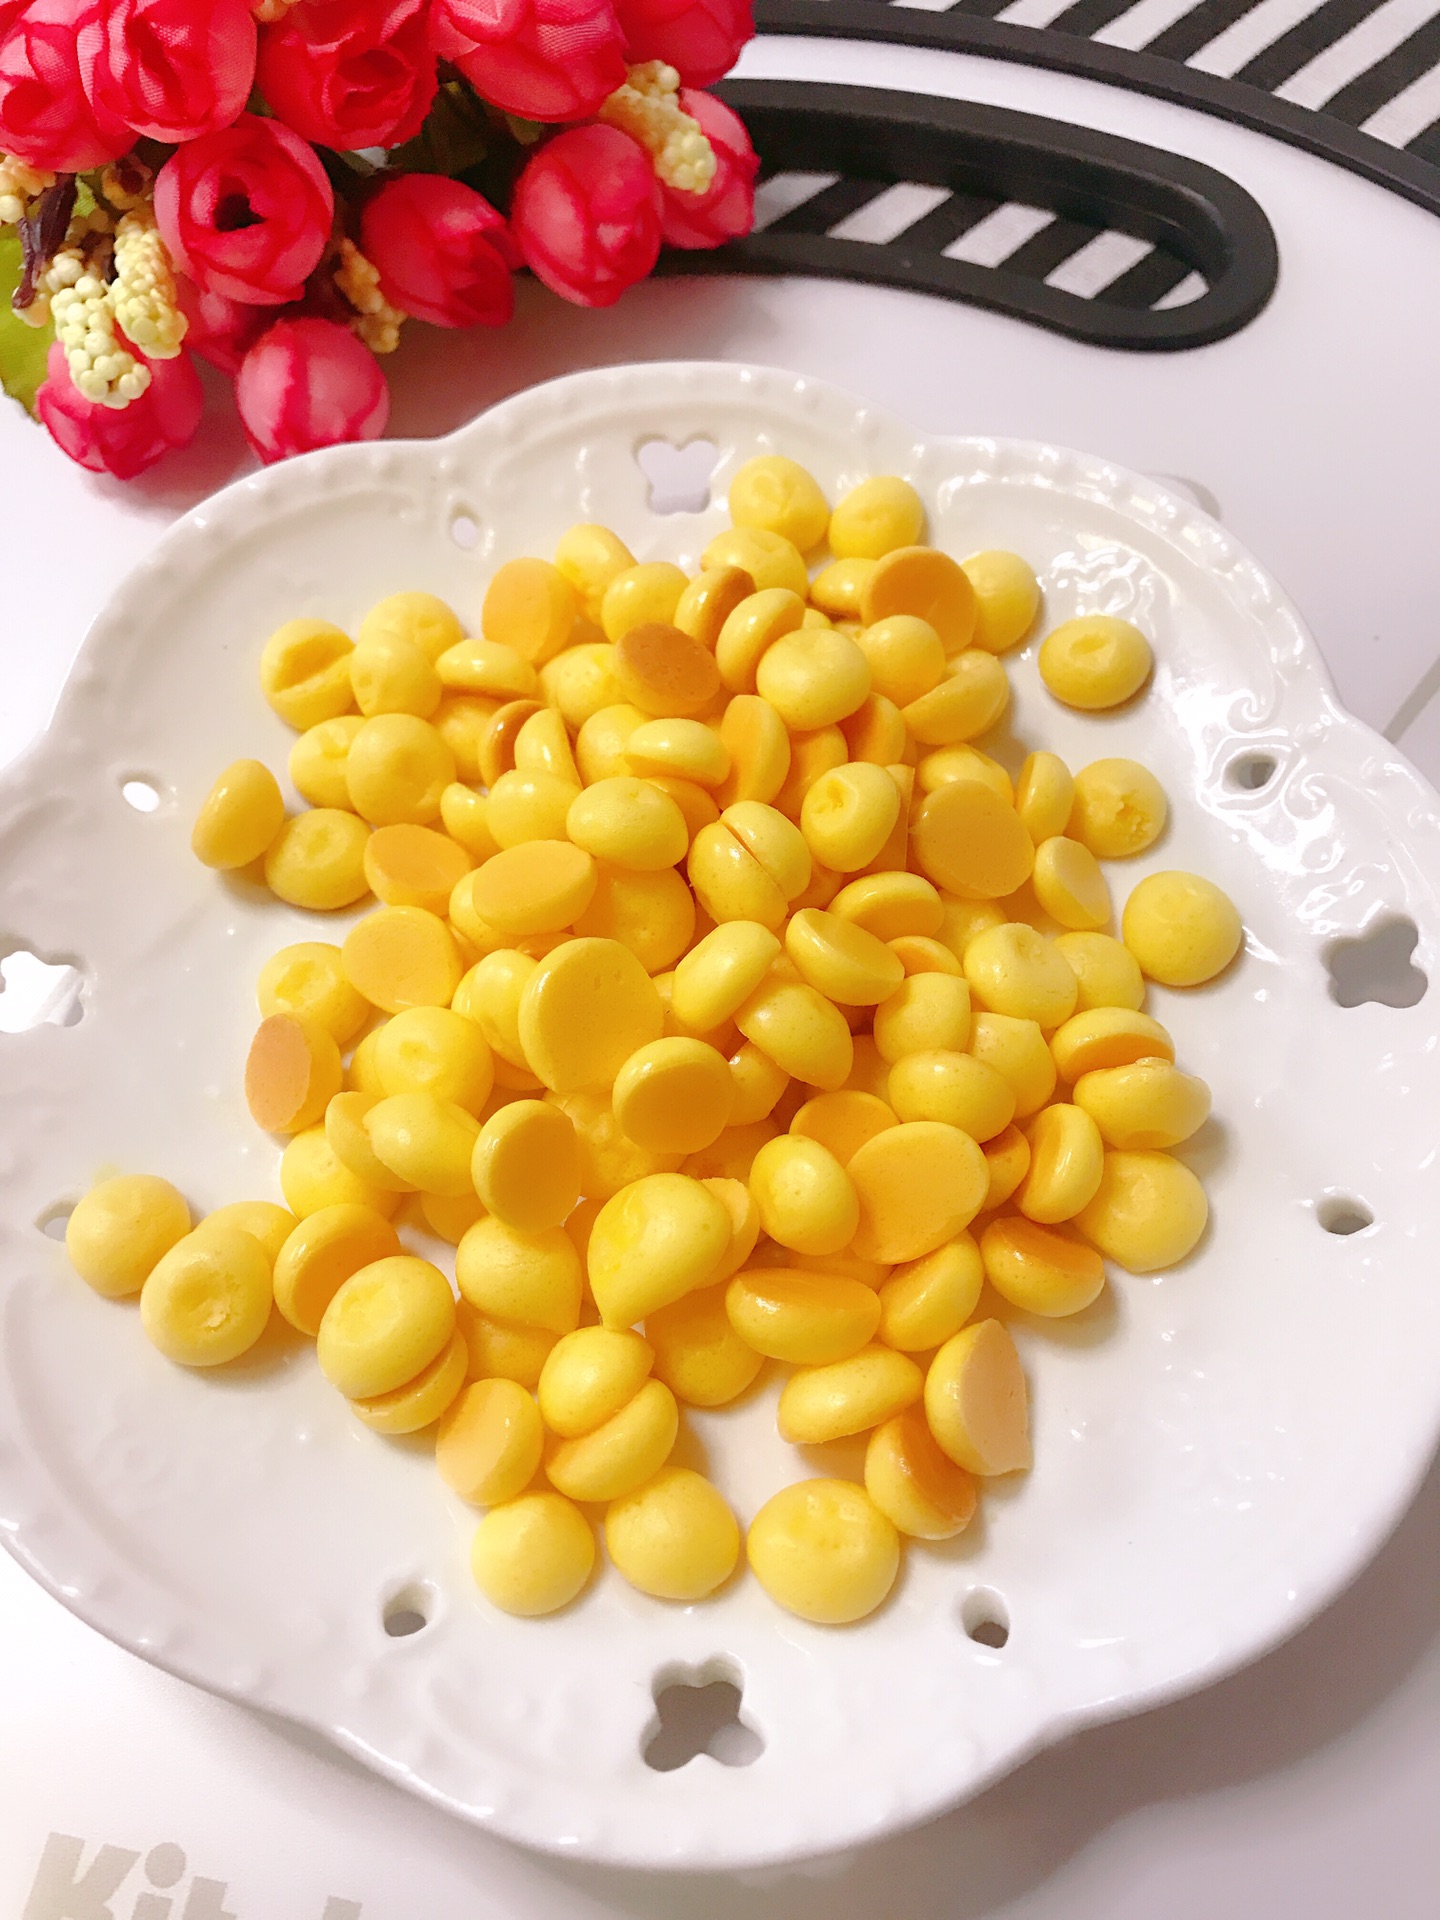 蛋黄溶豆,蛋黄溶豆的家常做法 - 美食杰蛋黄溶豆做法大全